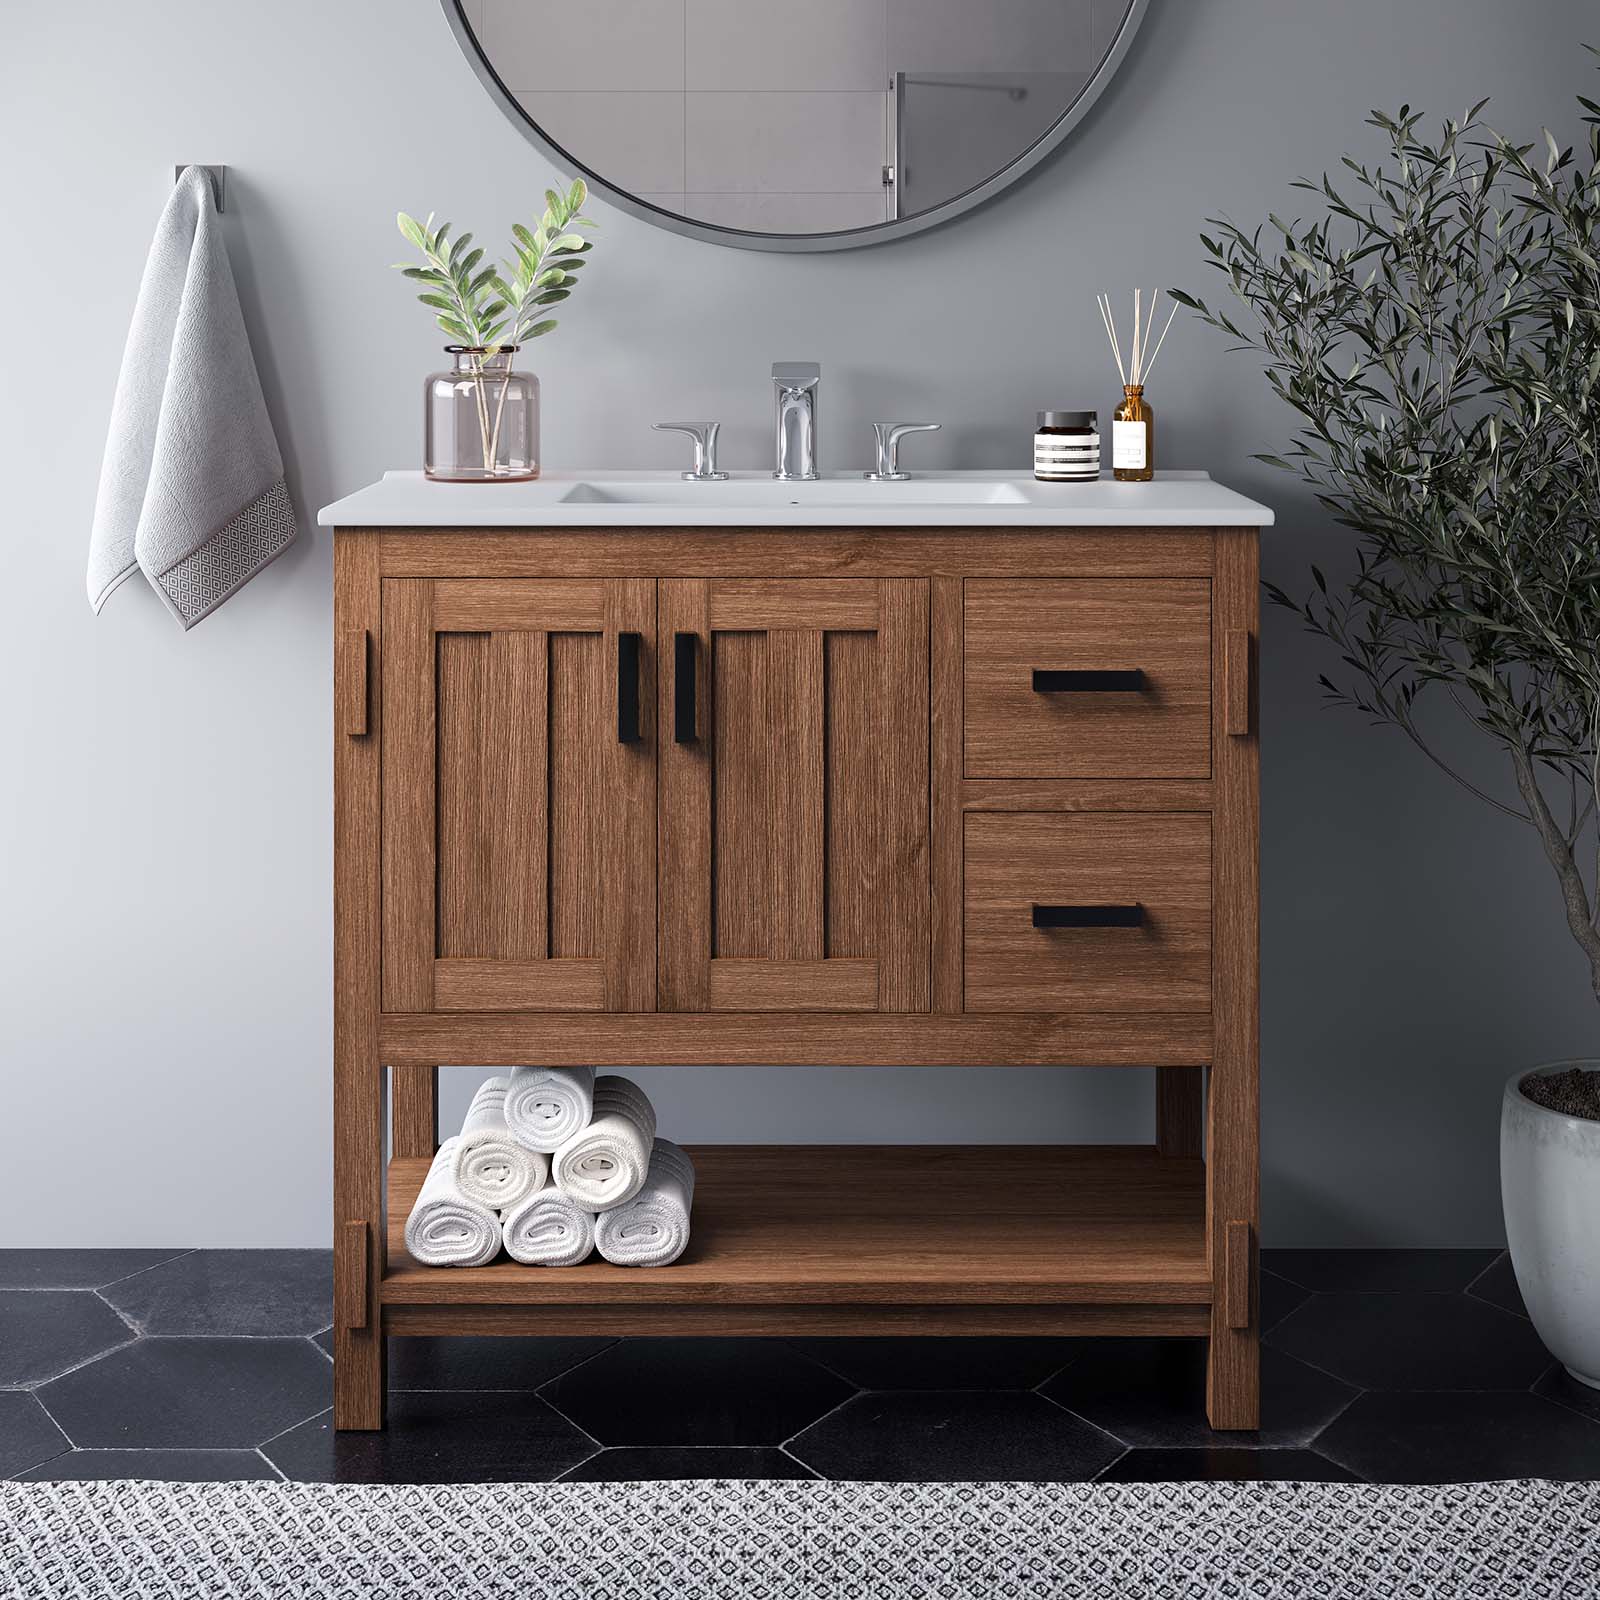 Ashlyn 36” Wood Bathroom Vanity - East Shore Modern Home Furnishings